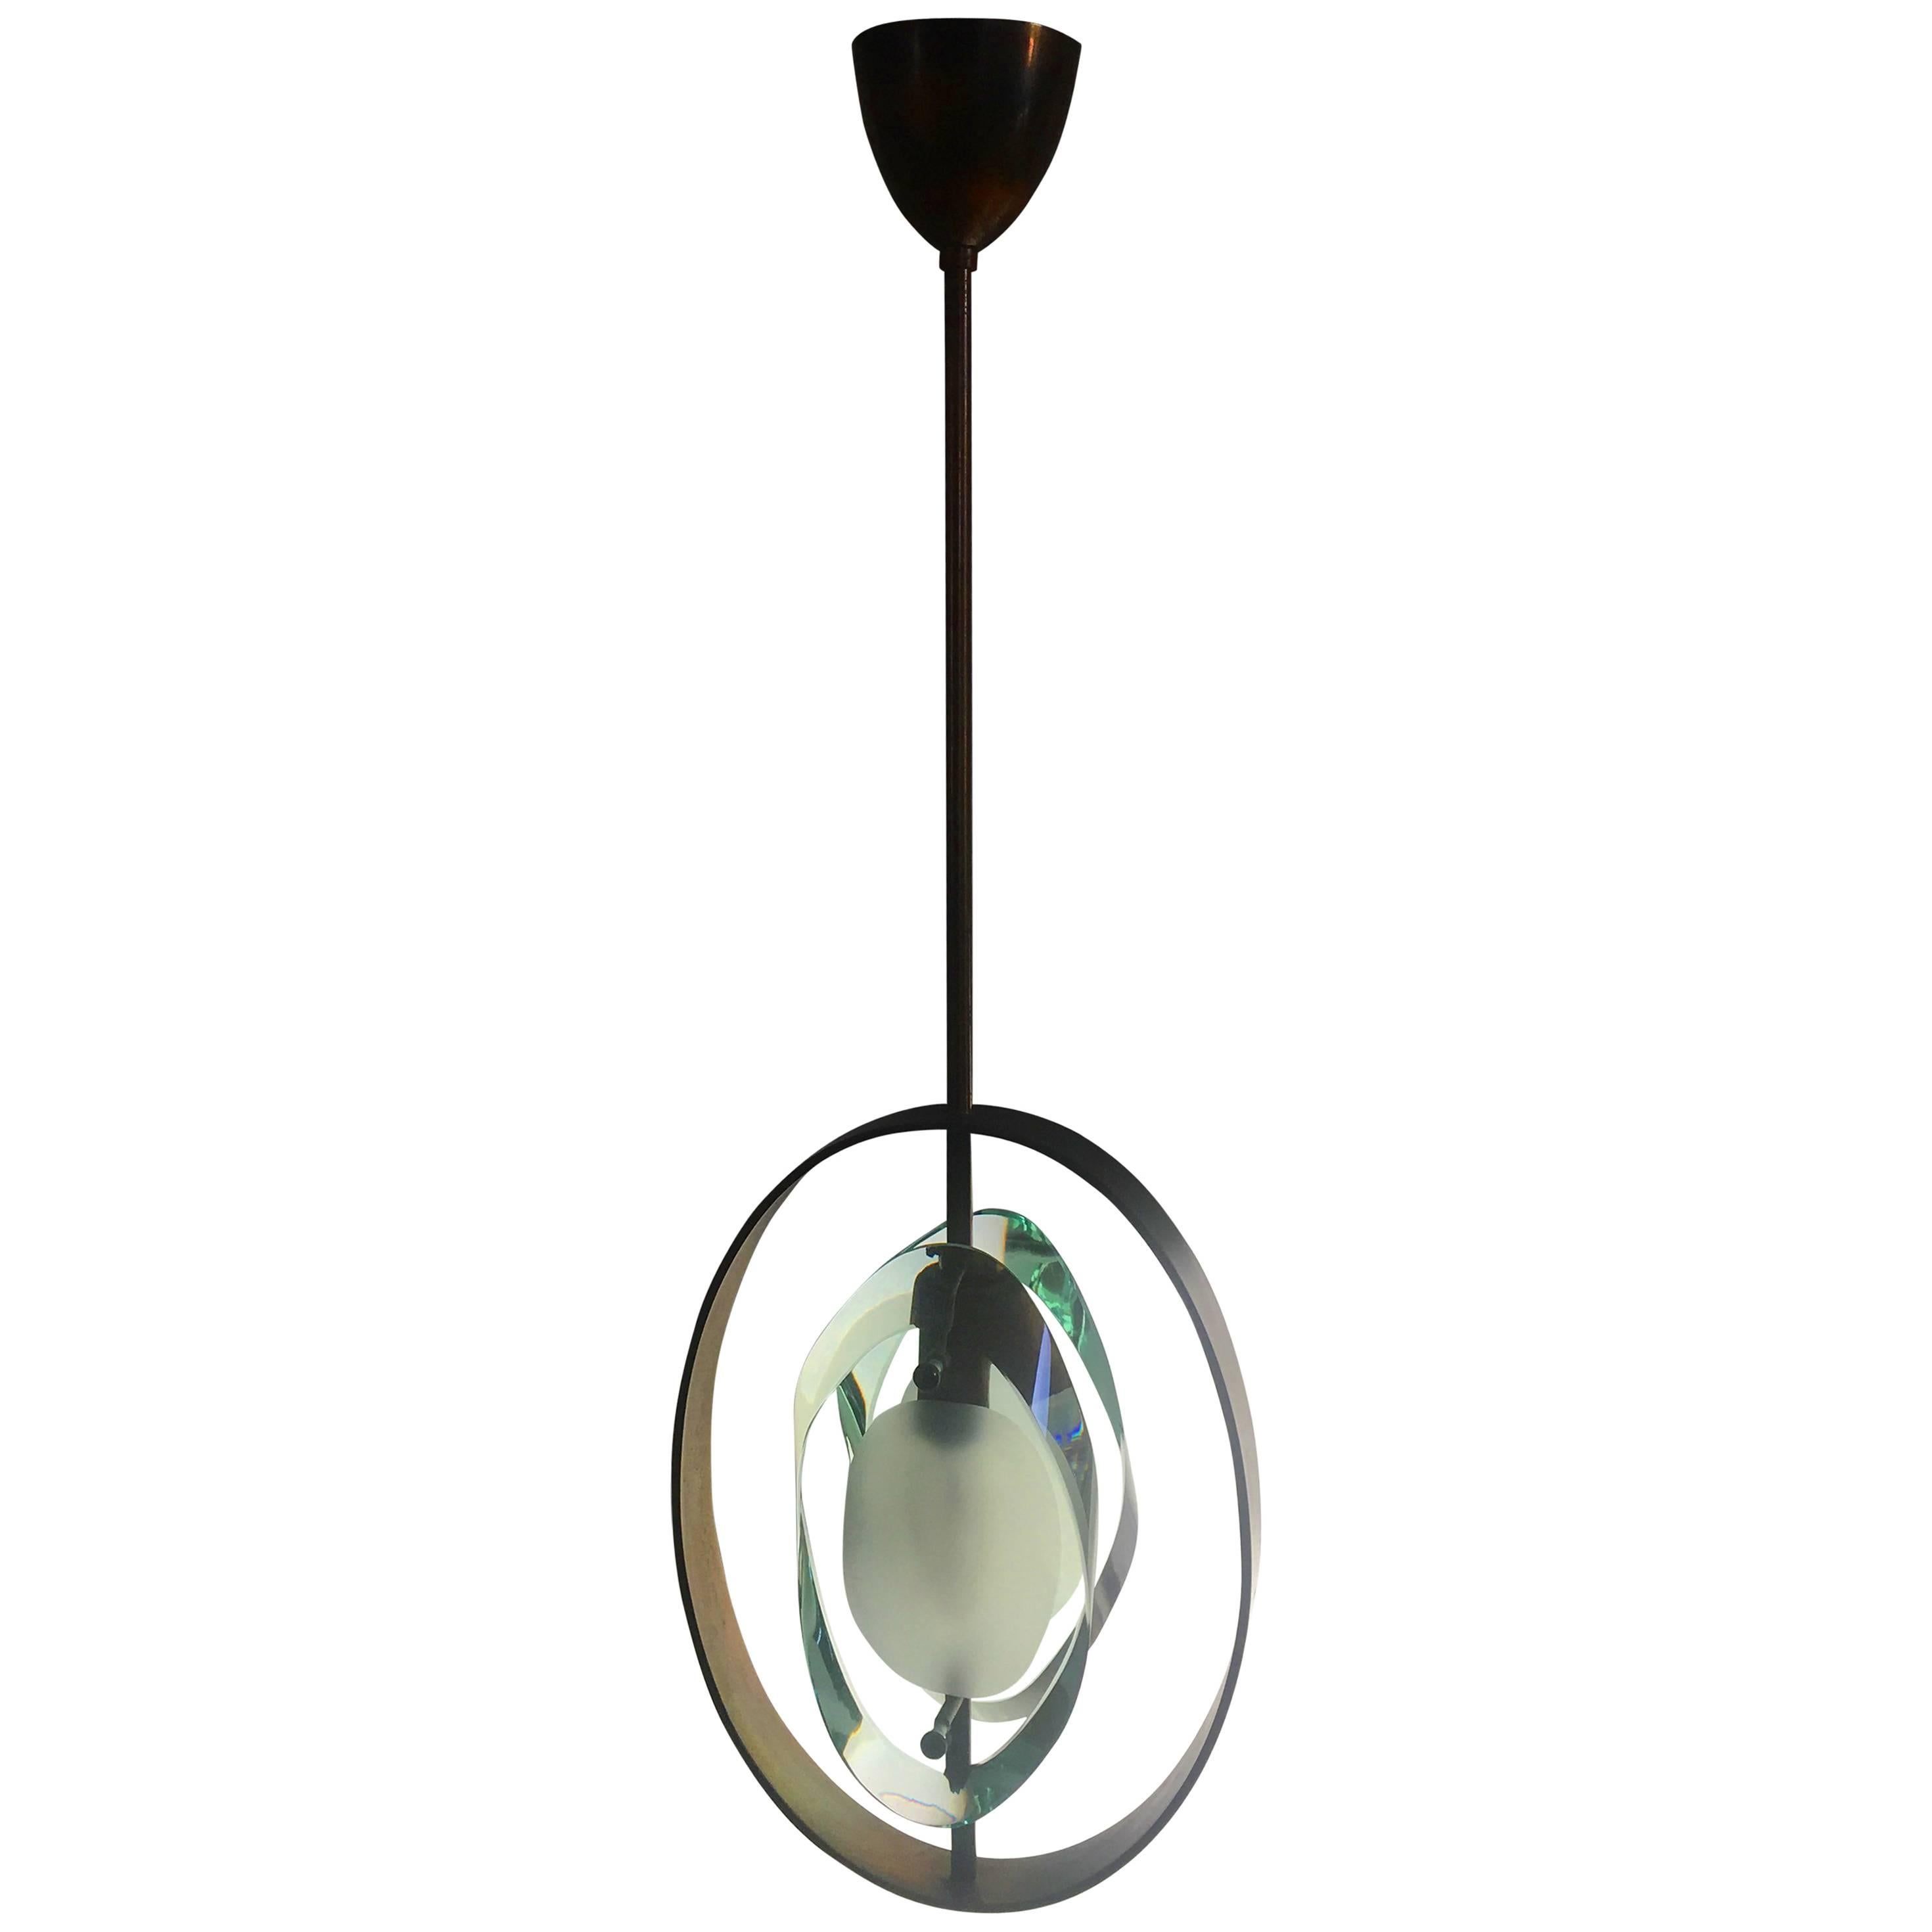 Original Pendant Lamp by Max Ingrand for Fontana Arte, Model 1933, 1961